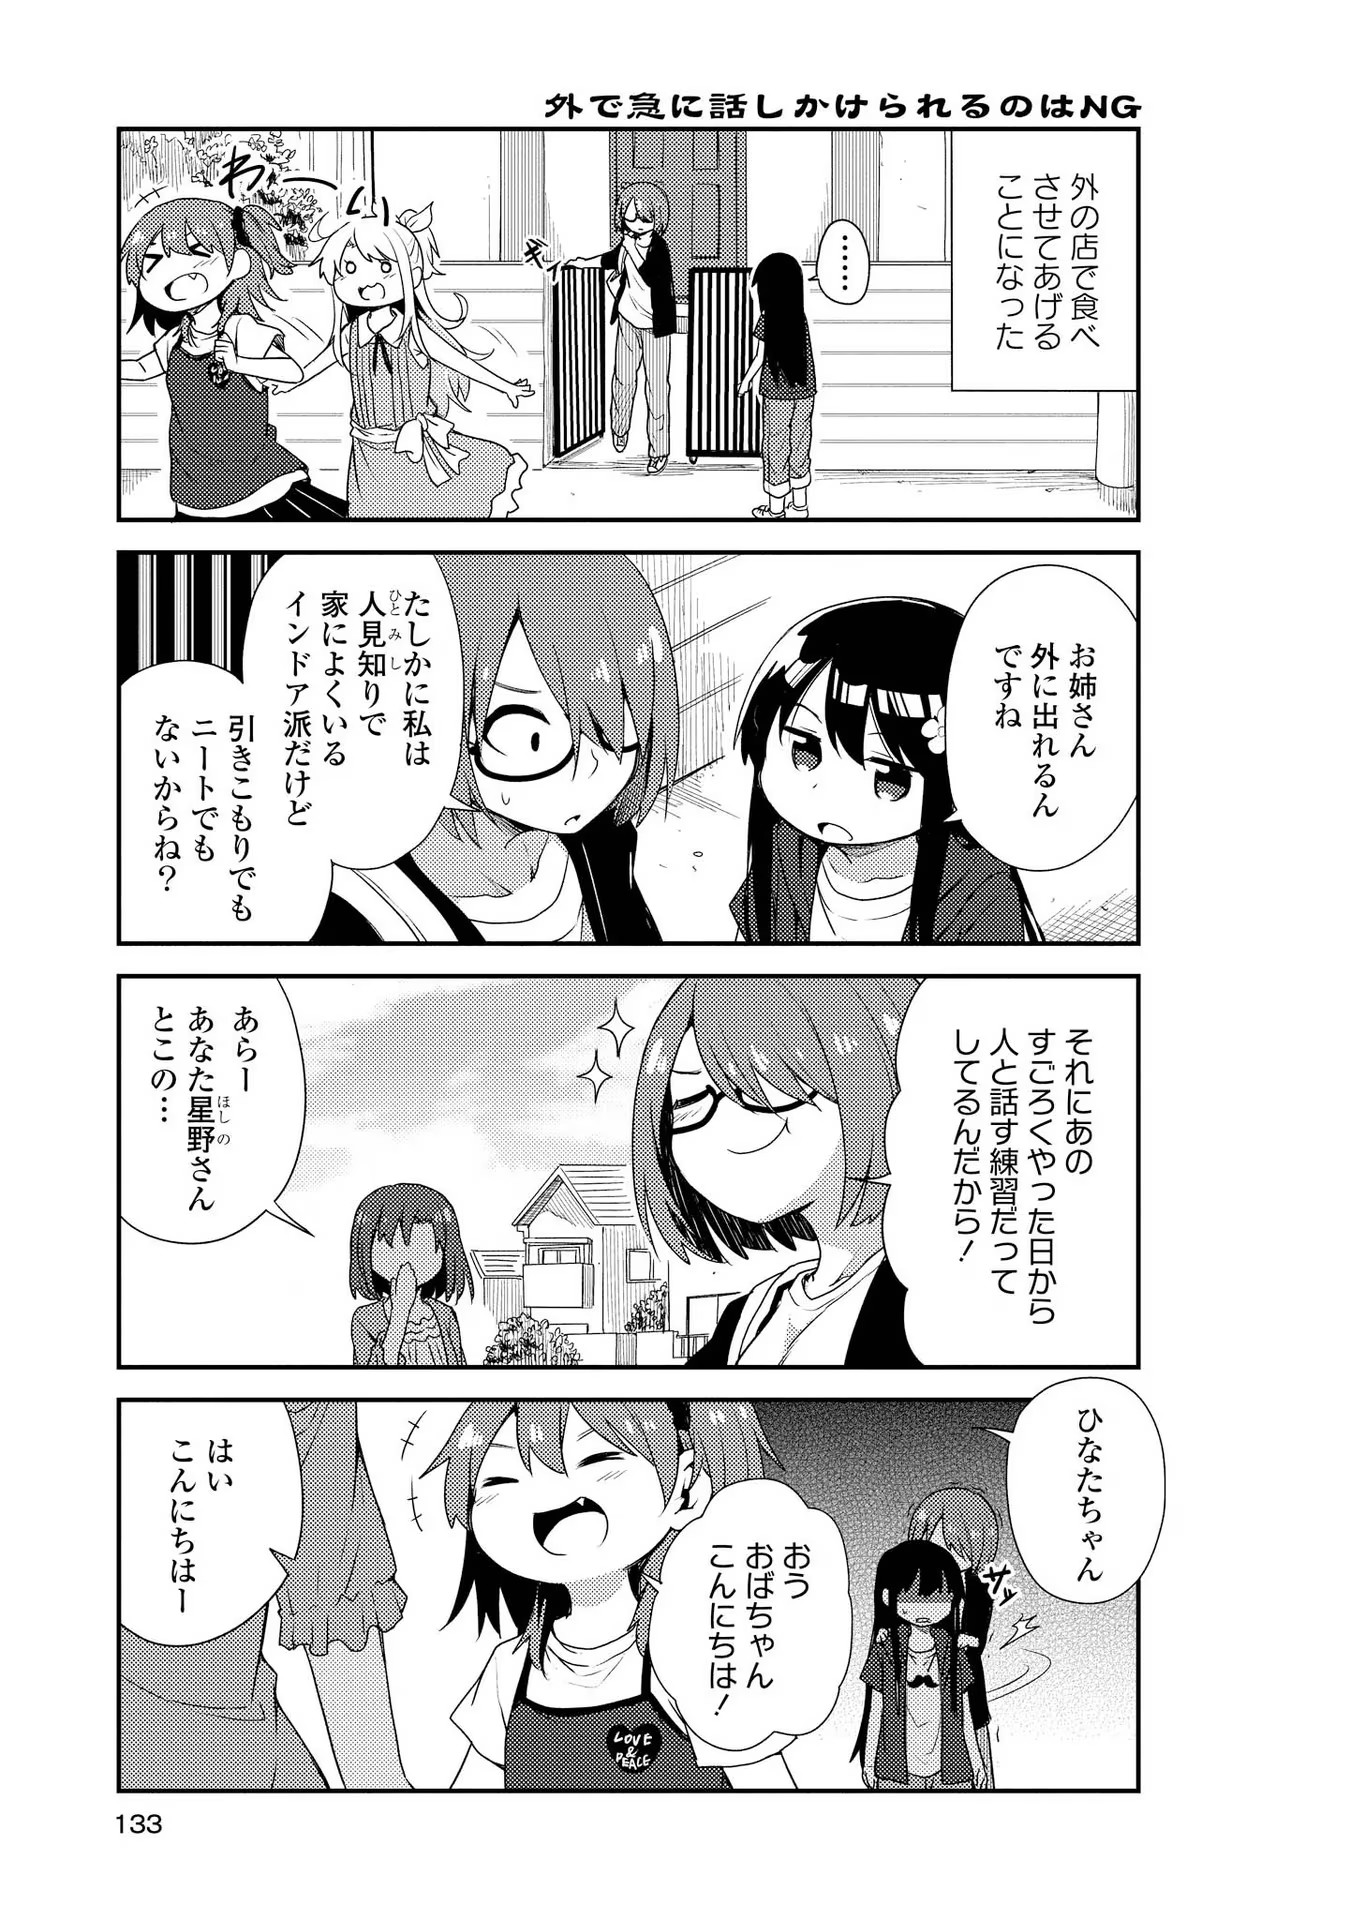 Watashi ni Tenshi ga Maiorita! - Chapter 9 - Page 5